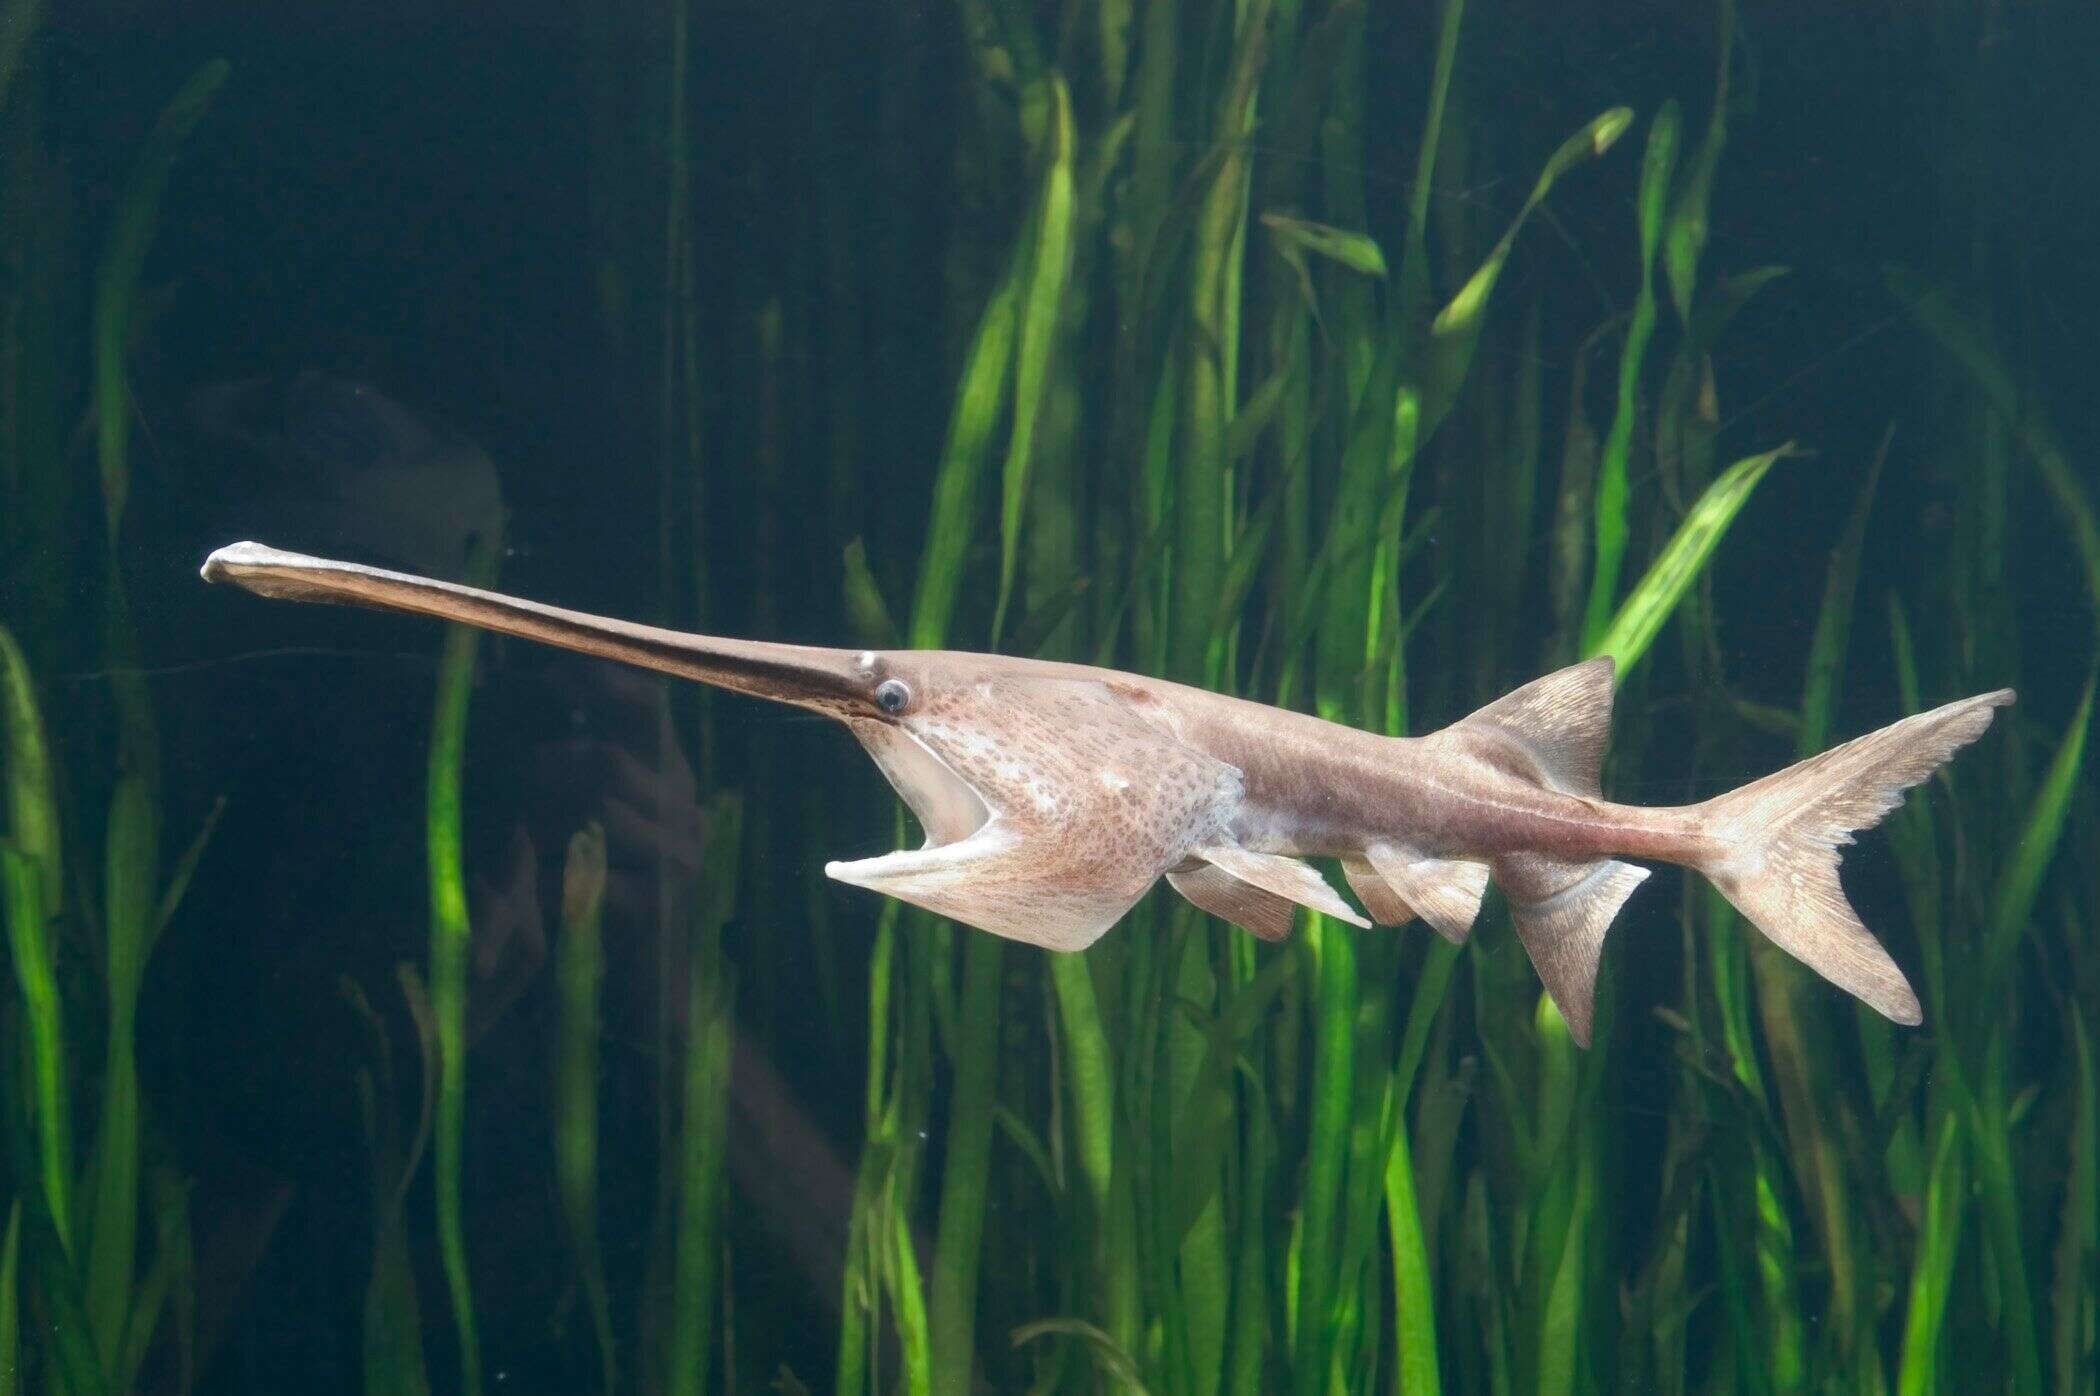 Depuis 2009, le “roi des poissons d’eau douce” n’a montré aucun signe de vie, mais les scientifiques ont attendu des preuves plus claires avant de le déclarer officiellement éteint.